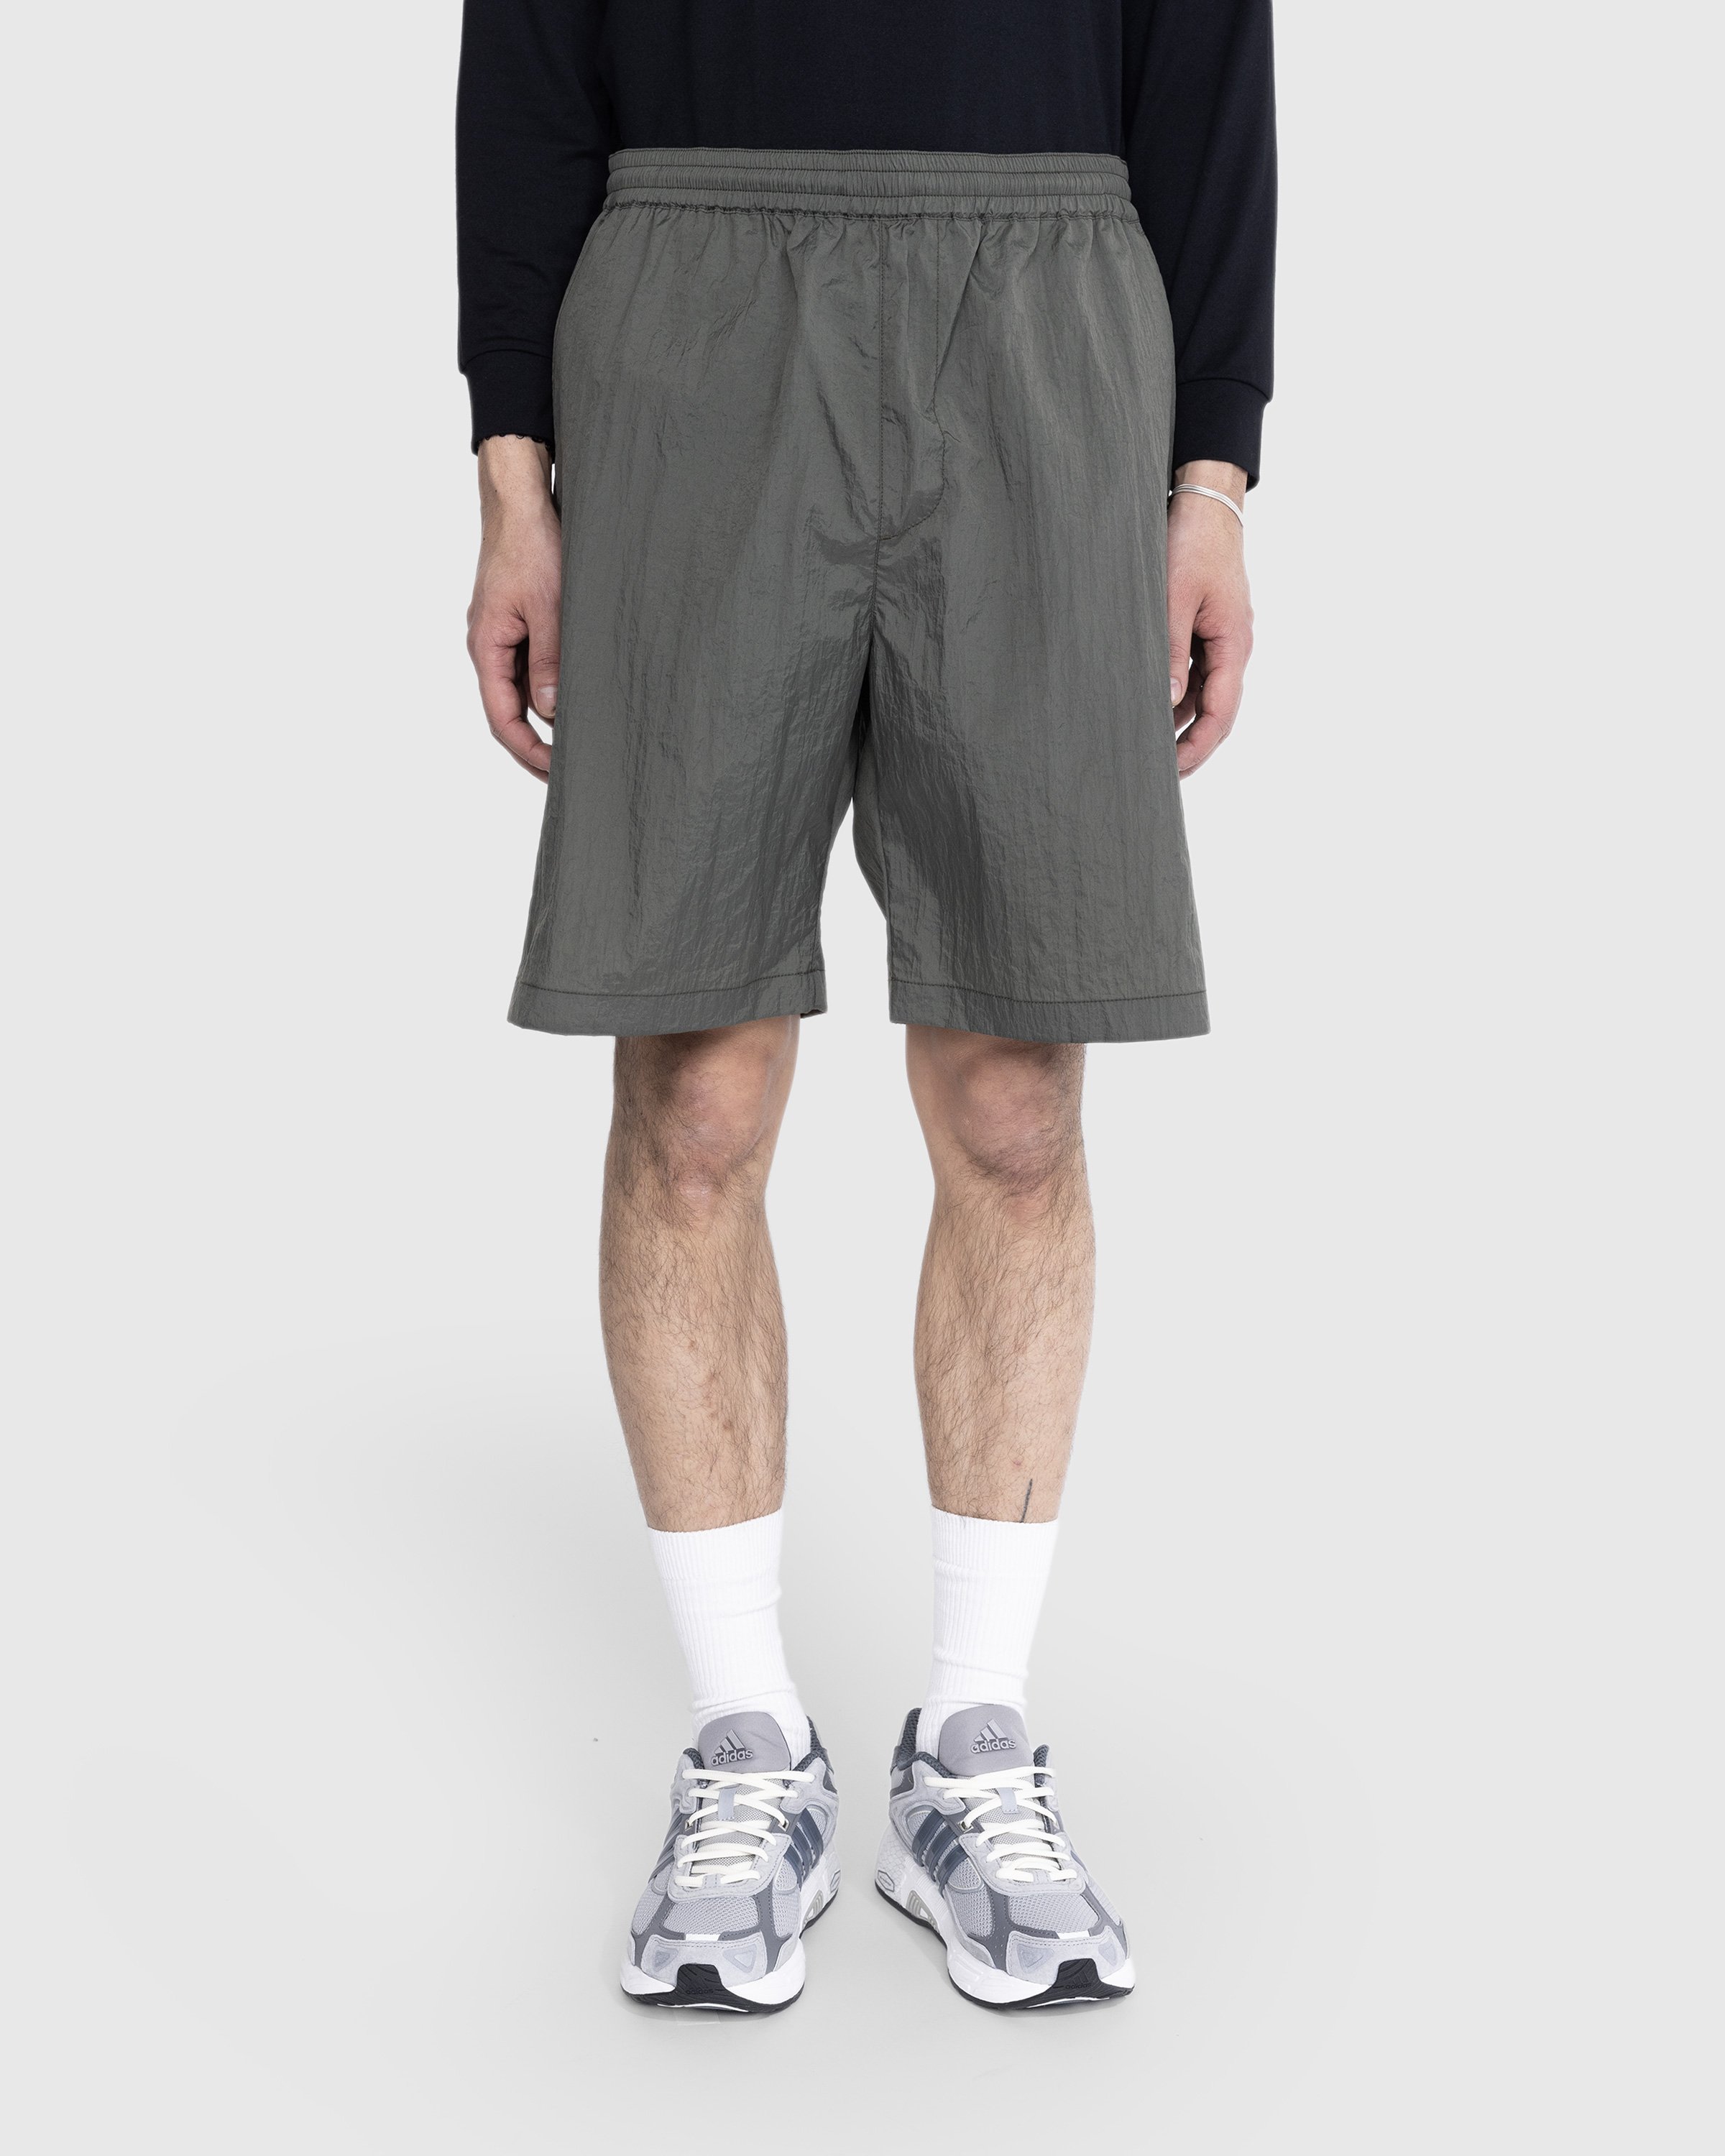 Highsnobiety - Texture Nylon Mid Length Elastic Shorts Grey - Clothing - Grey - Image 2